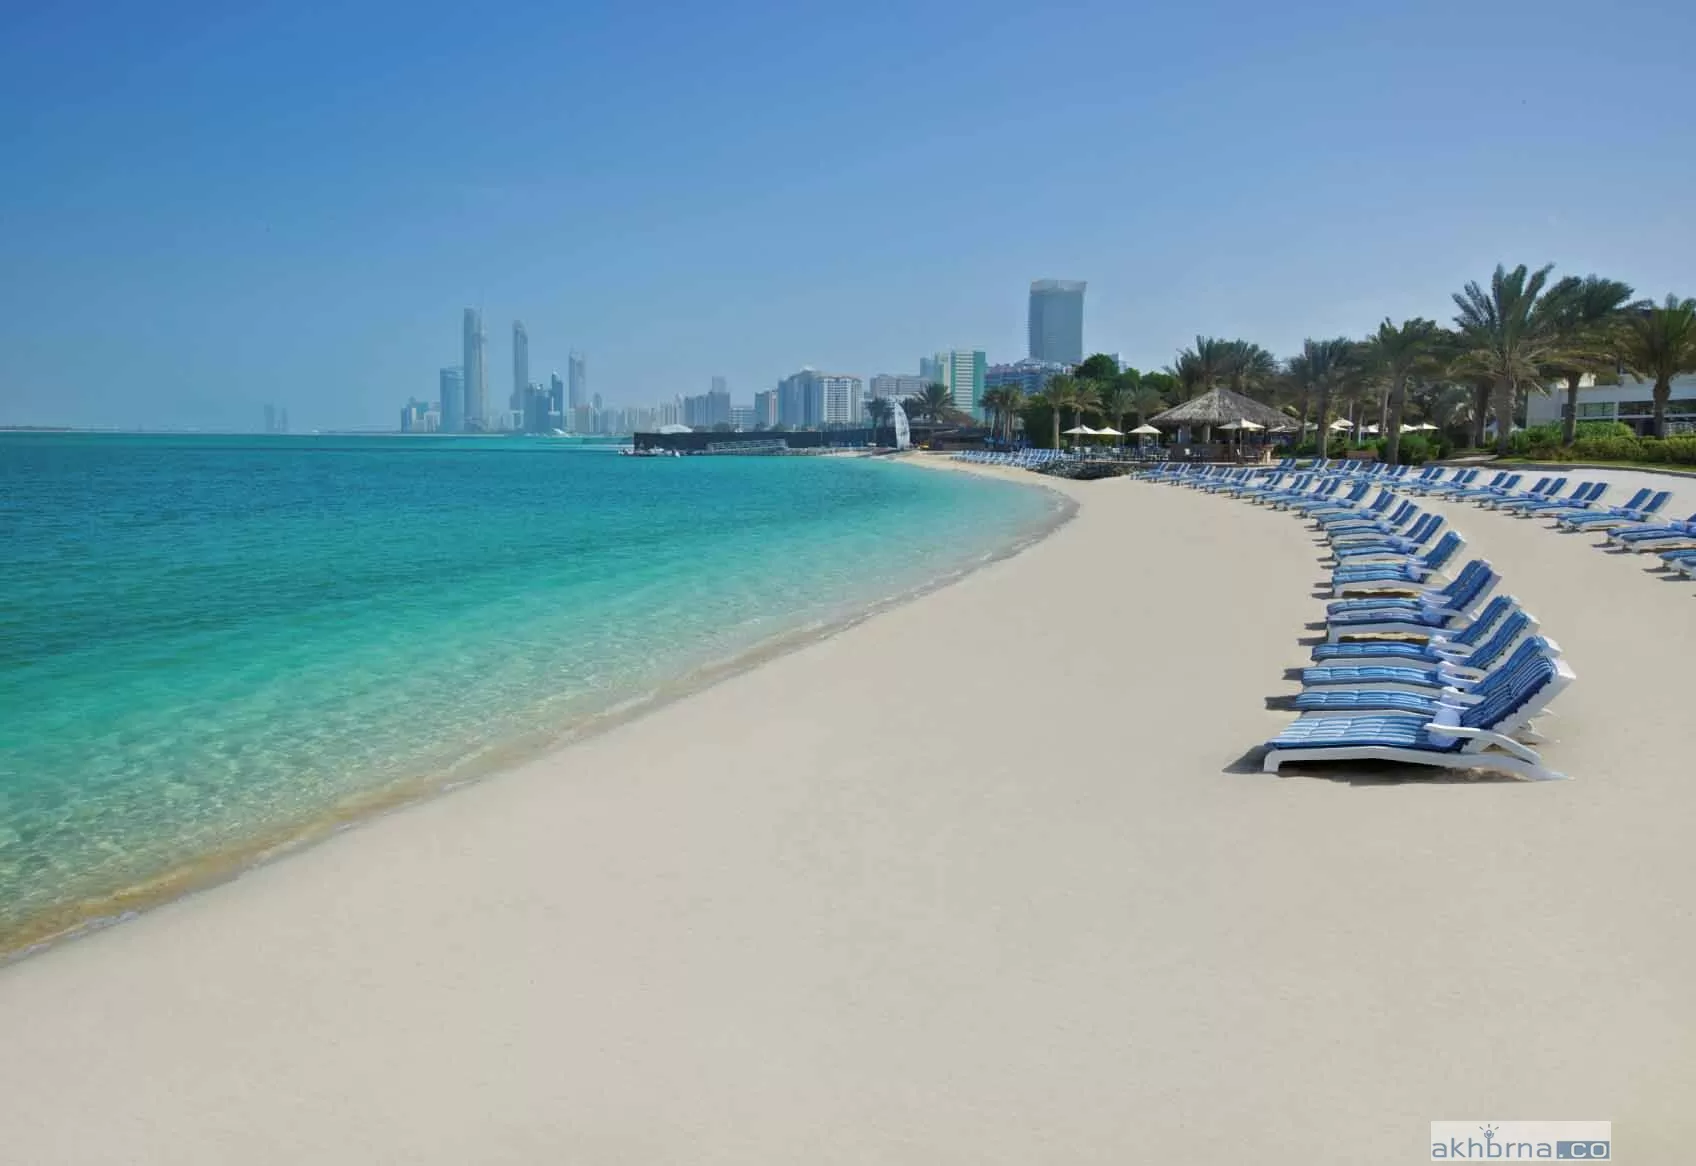  Beaches in UAE